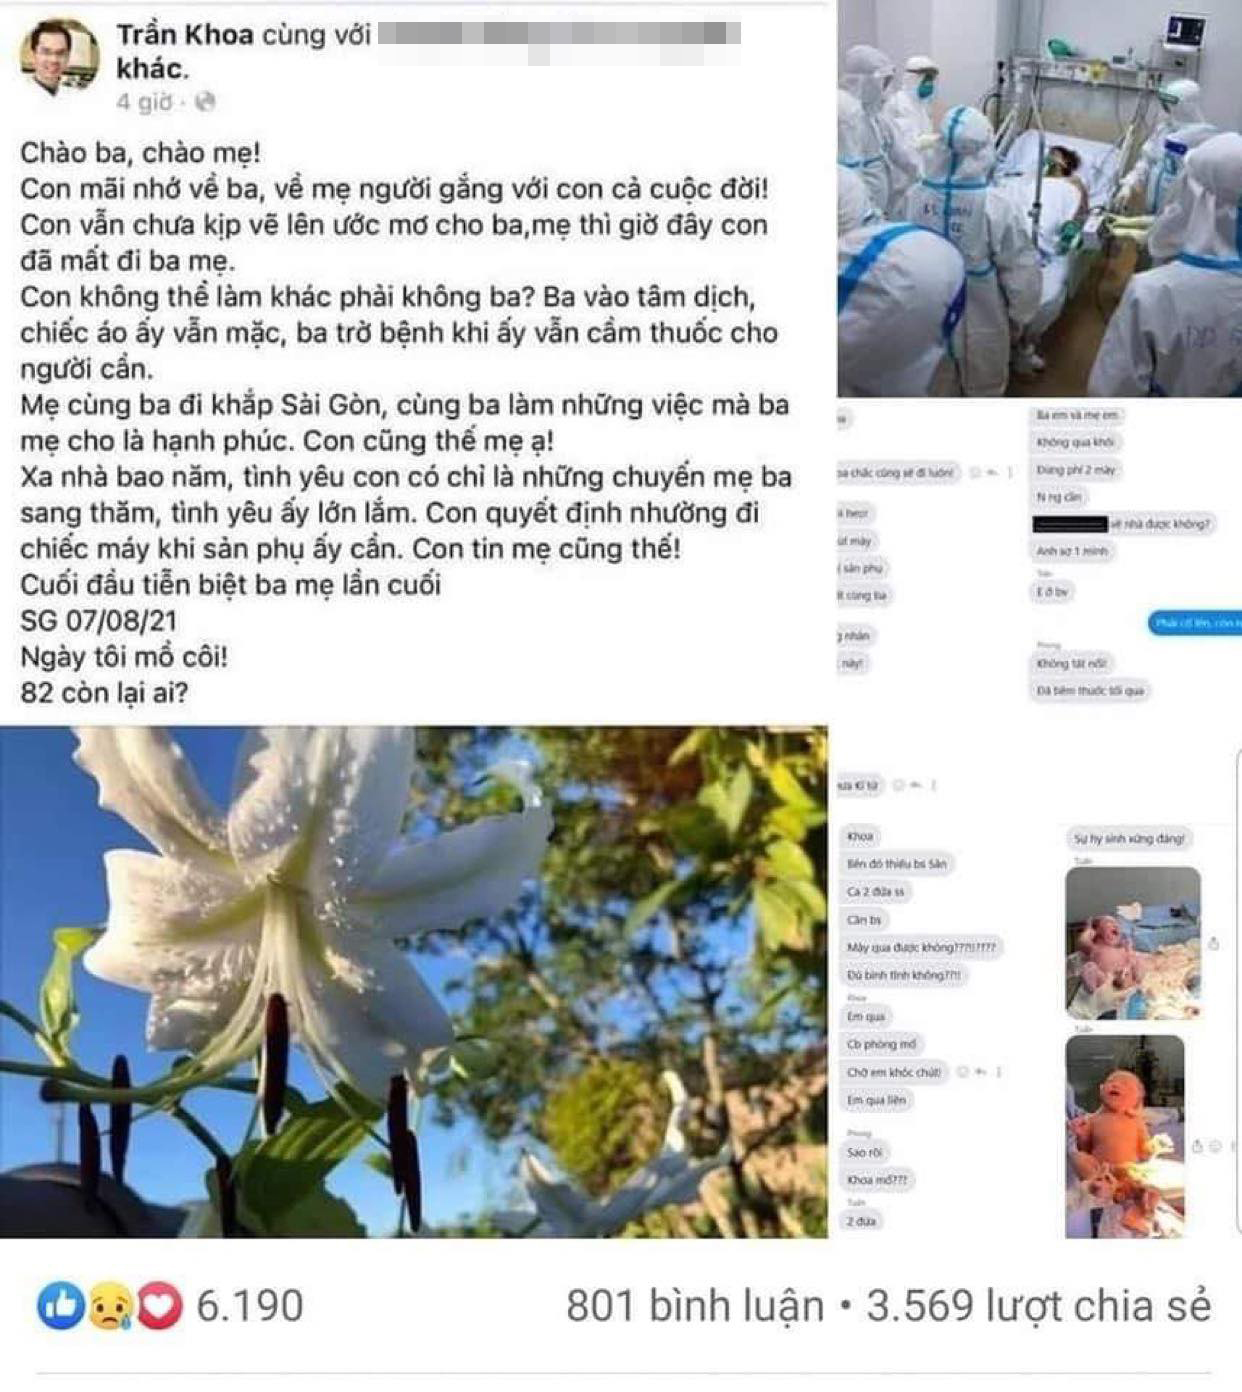 Sự việc về bác sĩ Trần Khoa được lan truyền trên mạng xã hội facebook